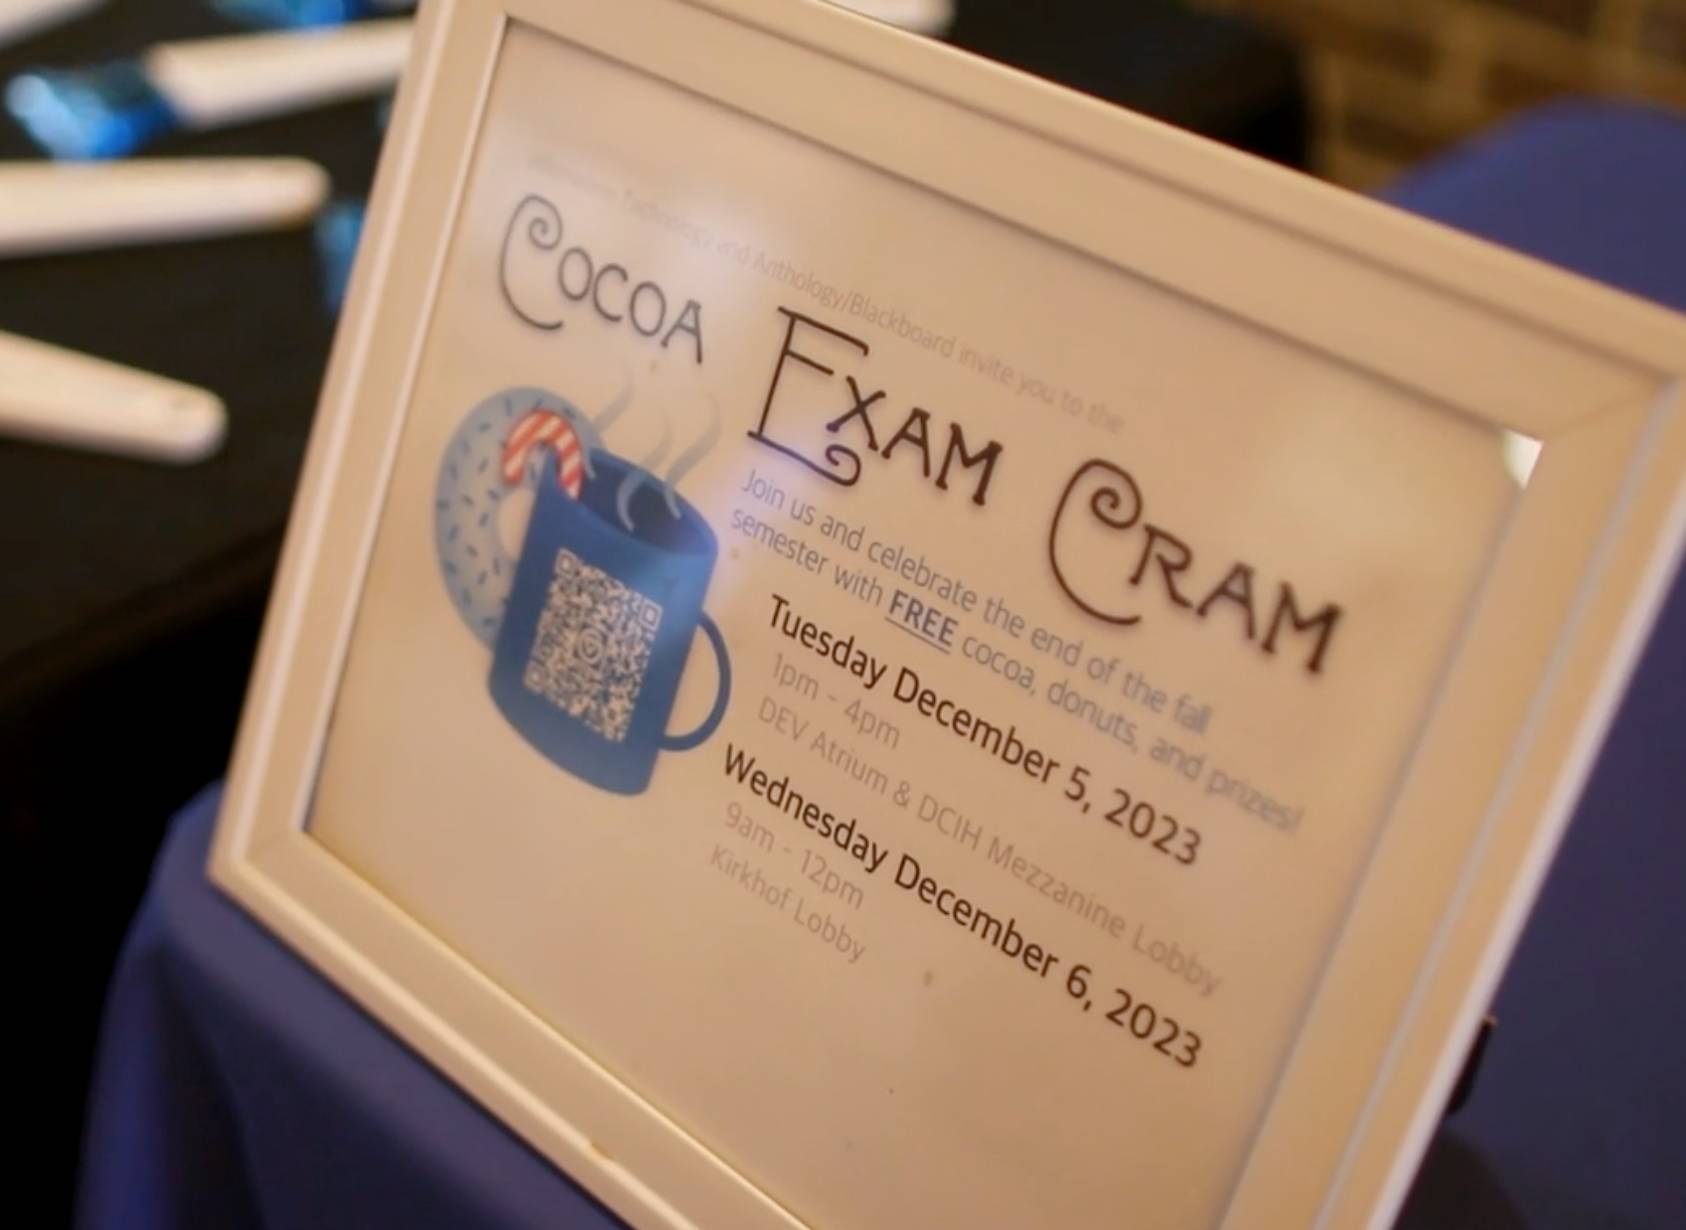 Cocoa Exam Cram